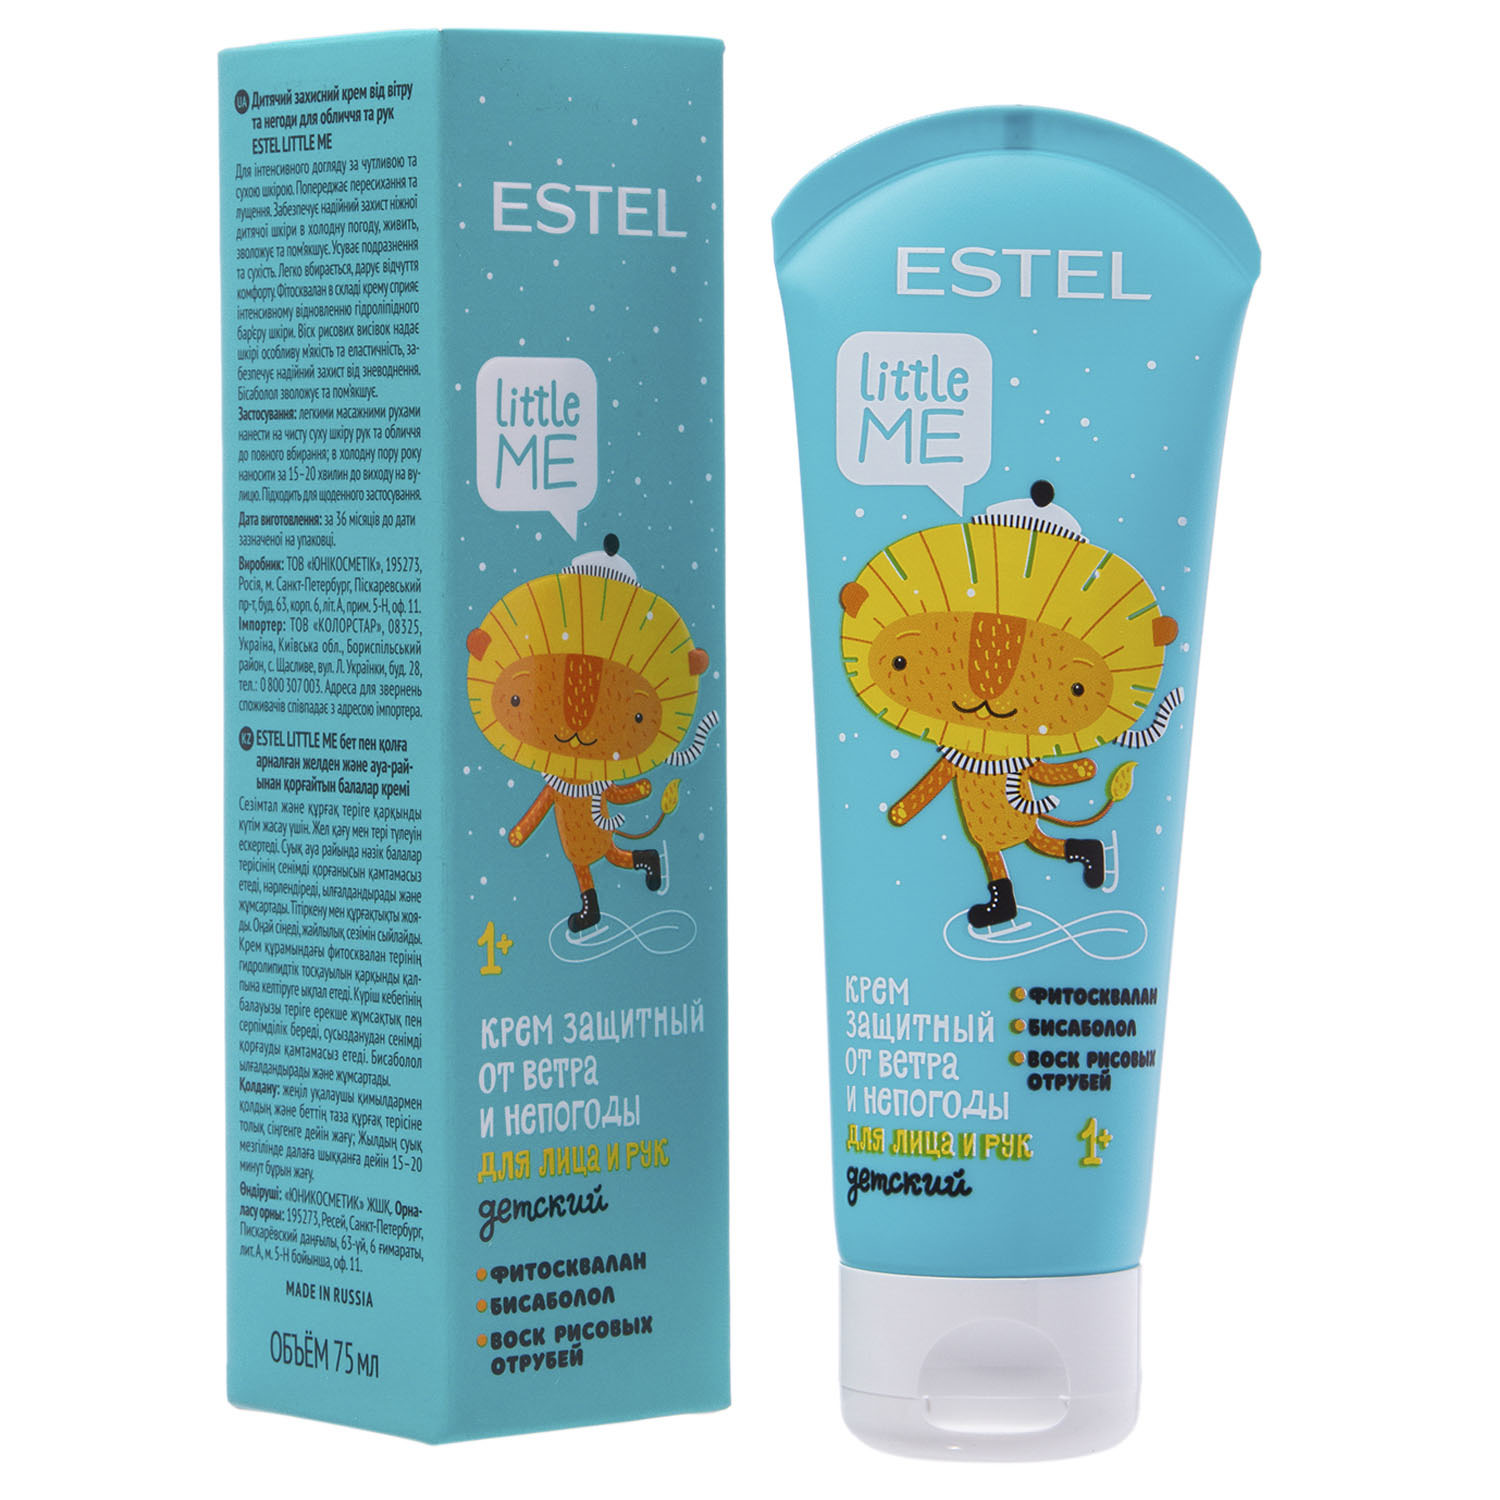 цена Estel Детский защитный крем от ветра и непогоды для лица и рук, 75 мл (Estel, Little me)